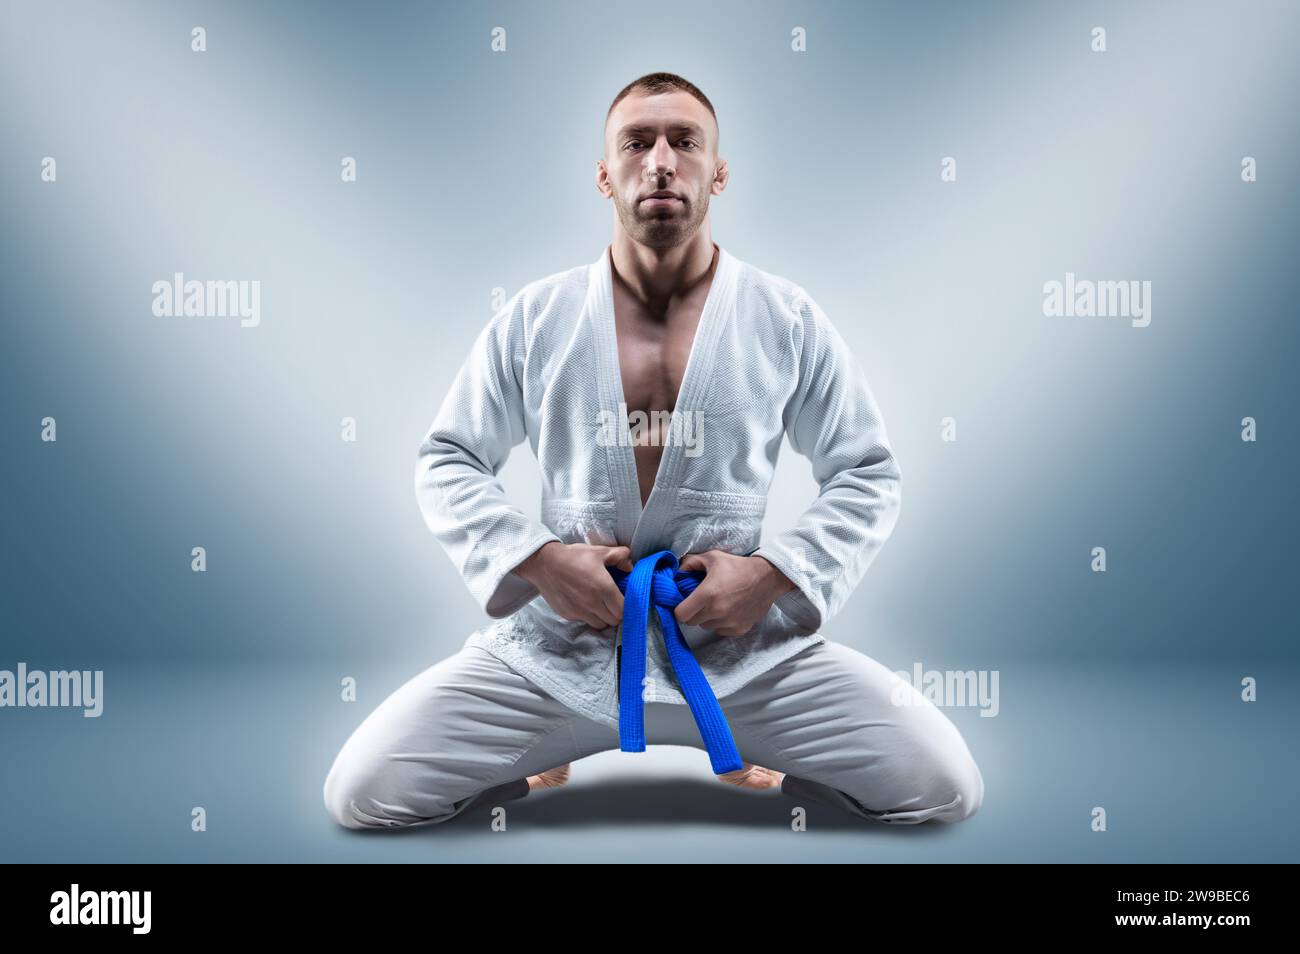 Athlet im Kimono mit blauem Gürtel sitzt und wartet auf den Gegner. Konzept von Karate, Sambo, Jujitsu. Gemischte Medien Stockfoto